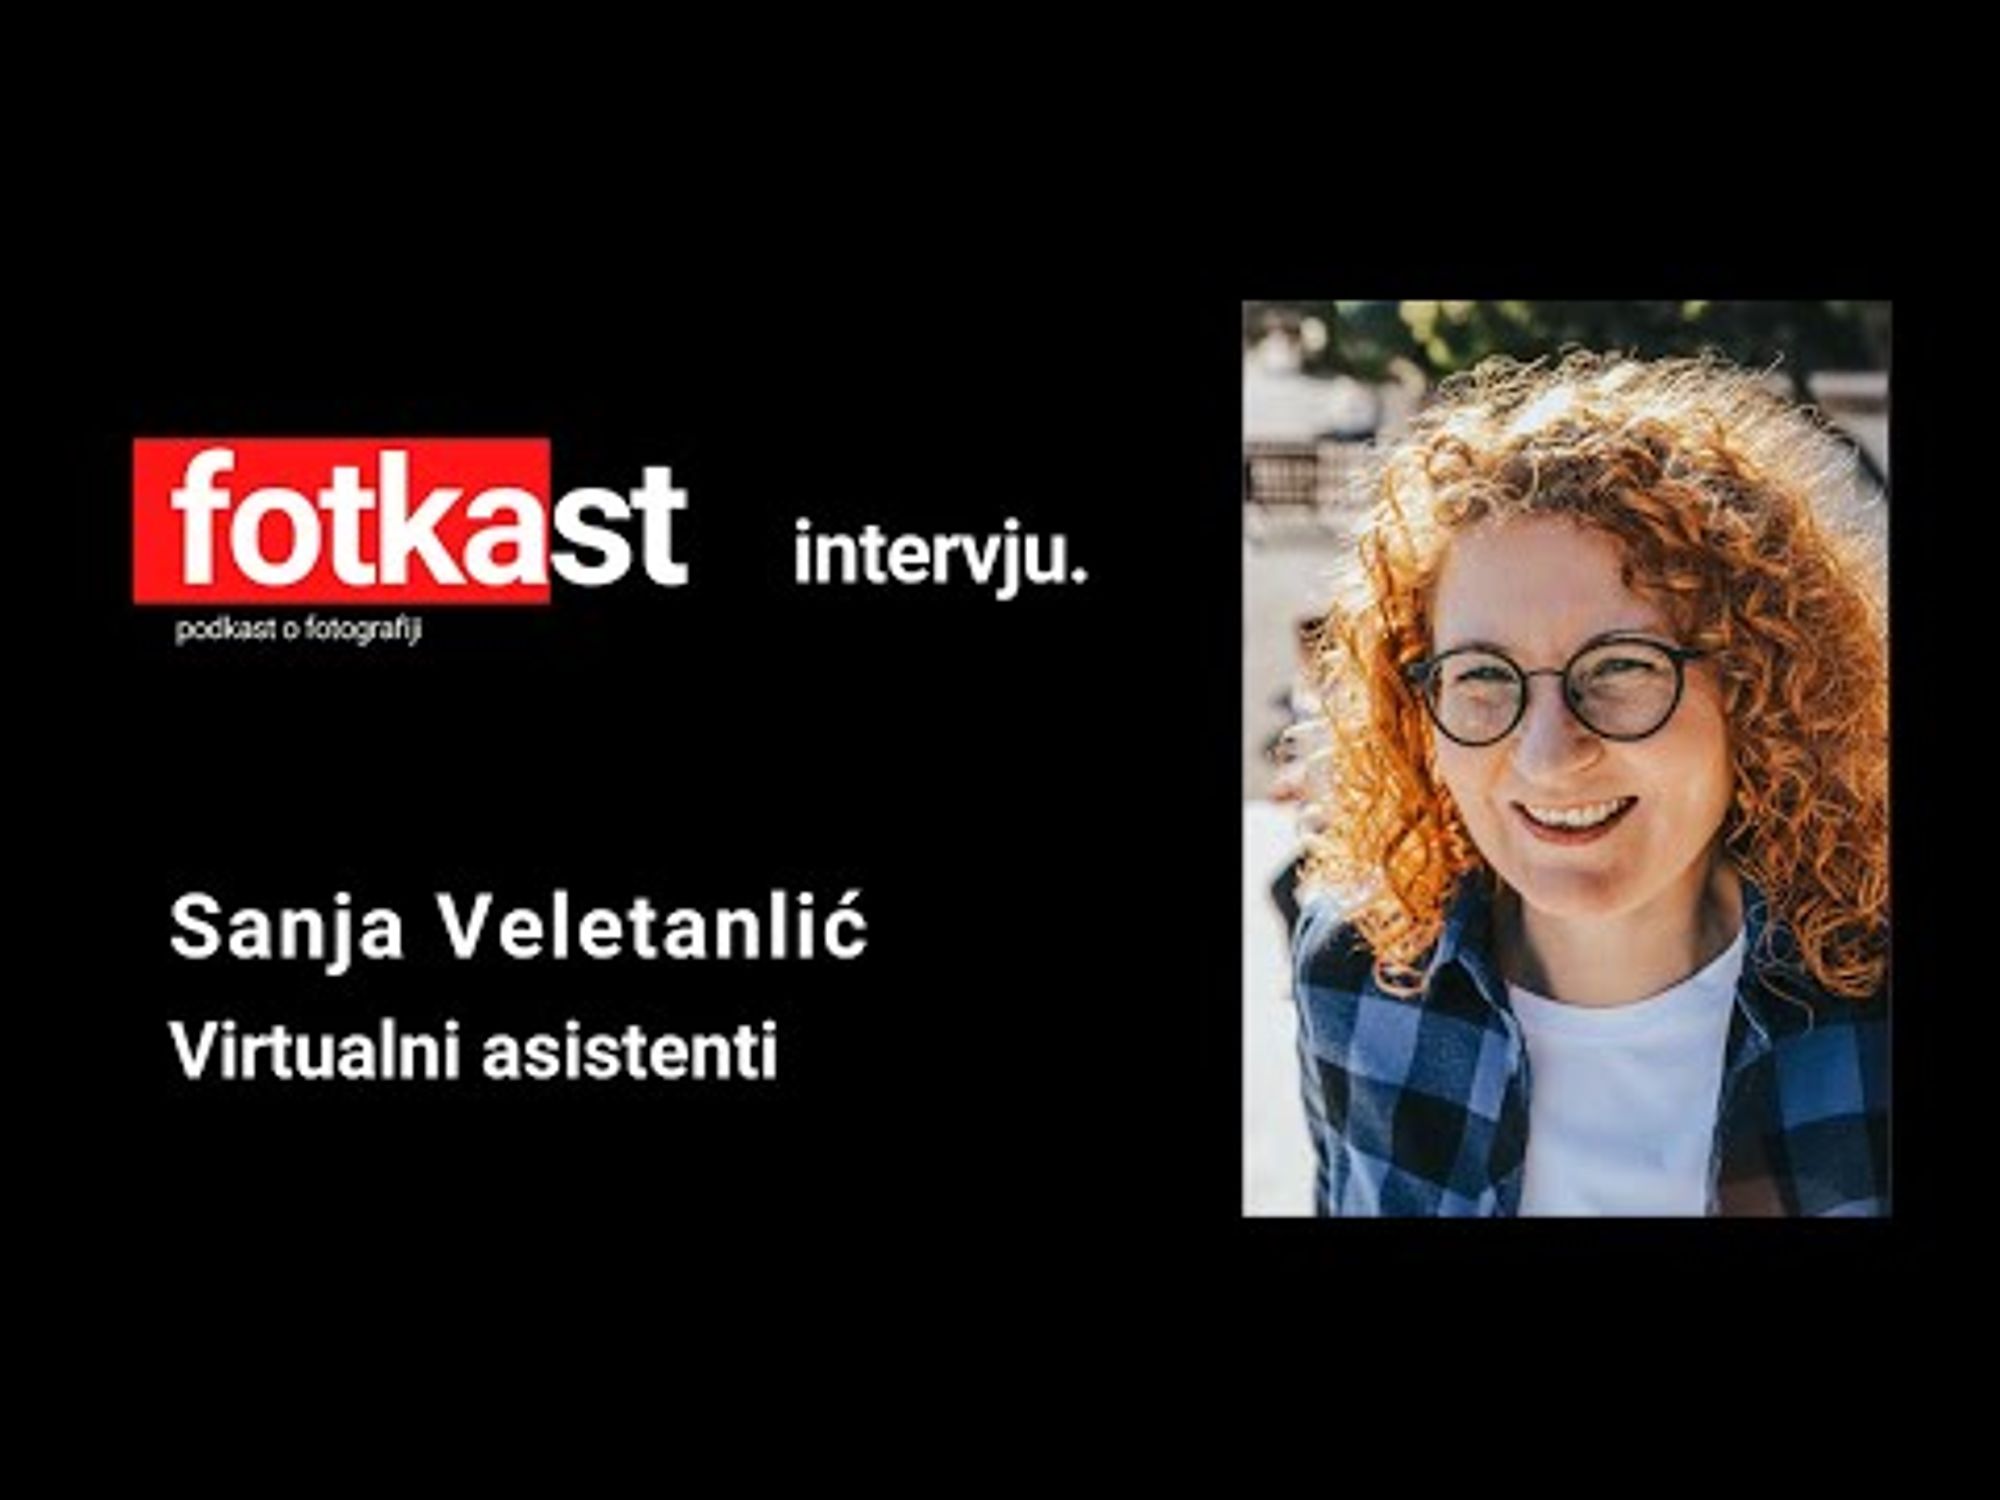 Fotkast intervju #003: Sanja Veletanlić